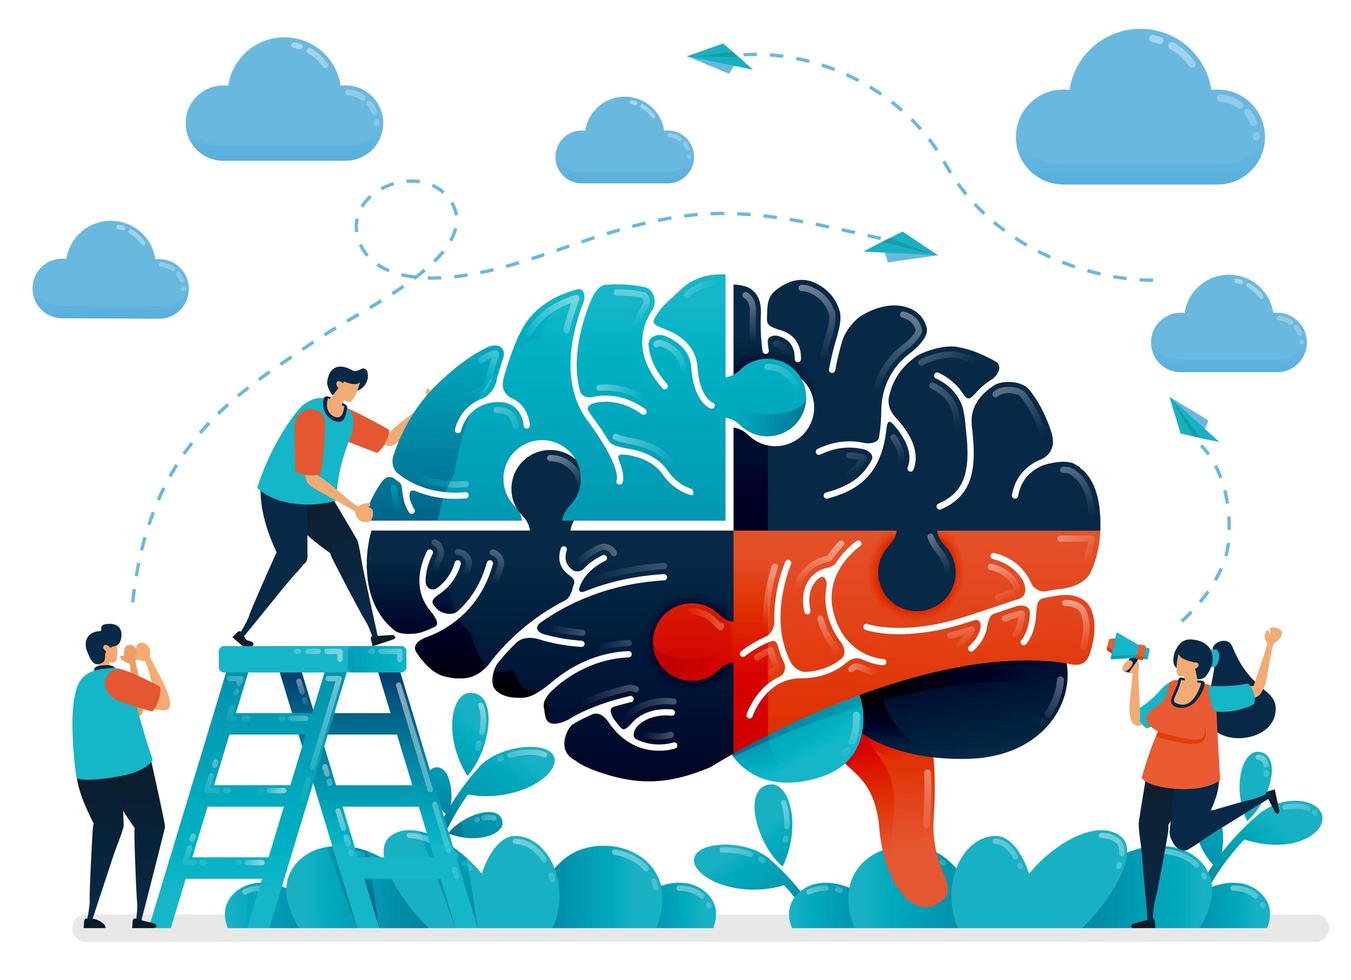 brainstormen om hersenpuzzels op te lossen. metafoor voor teamwerk en samenwerking. intelligentie bij het omgaan met uitdagingen en problemen. vectorillustratie, grafisch ontwerp, kaart, banner, brochure, flyer vector